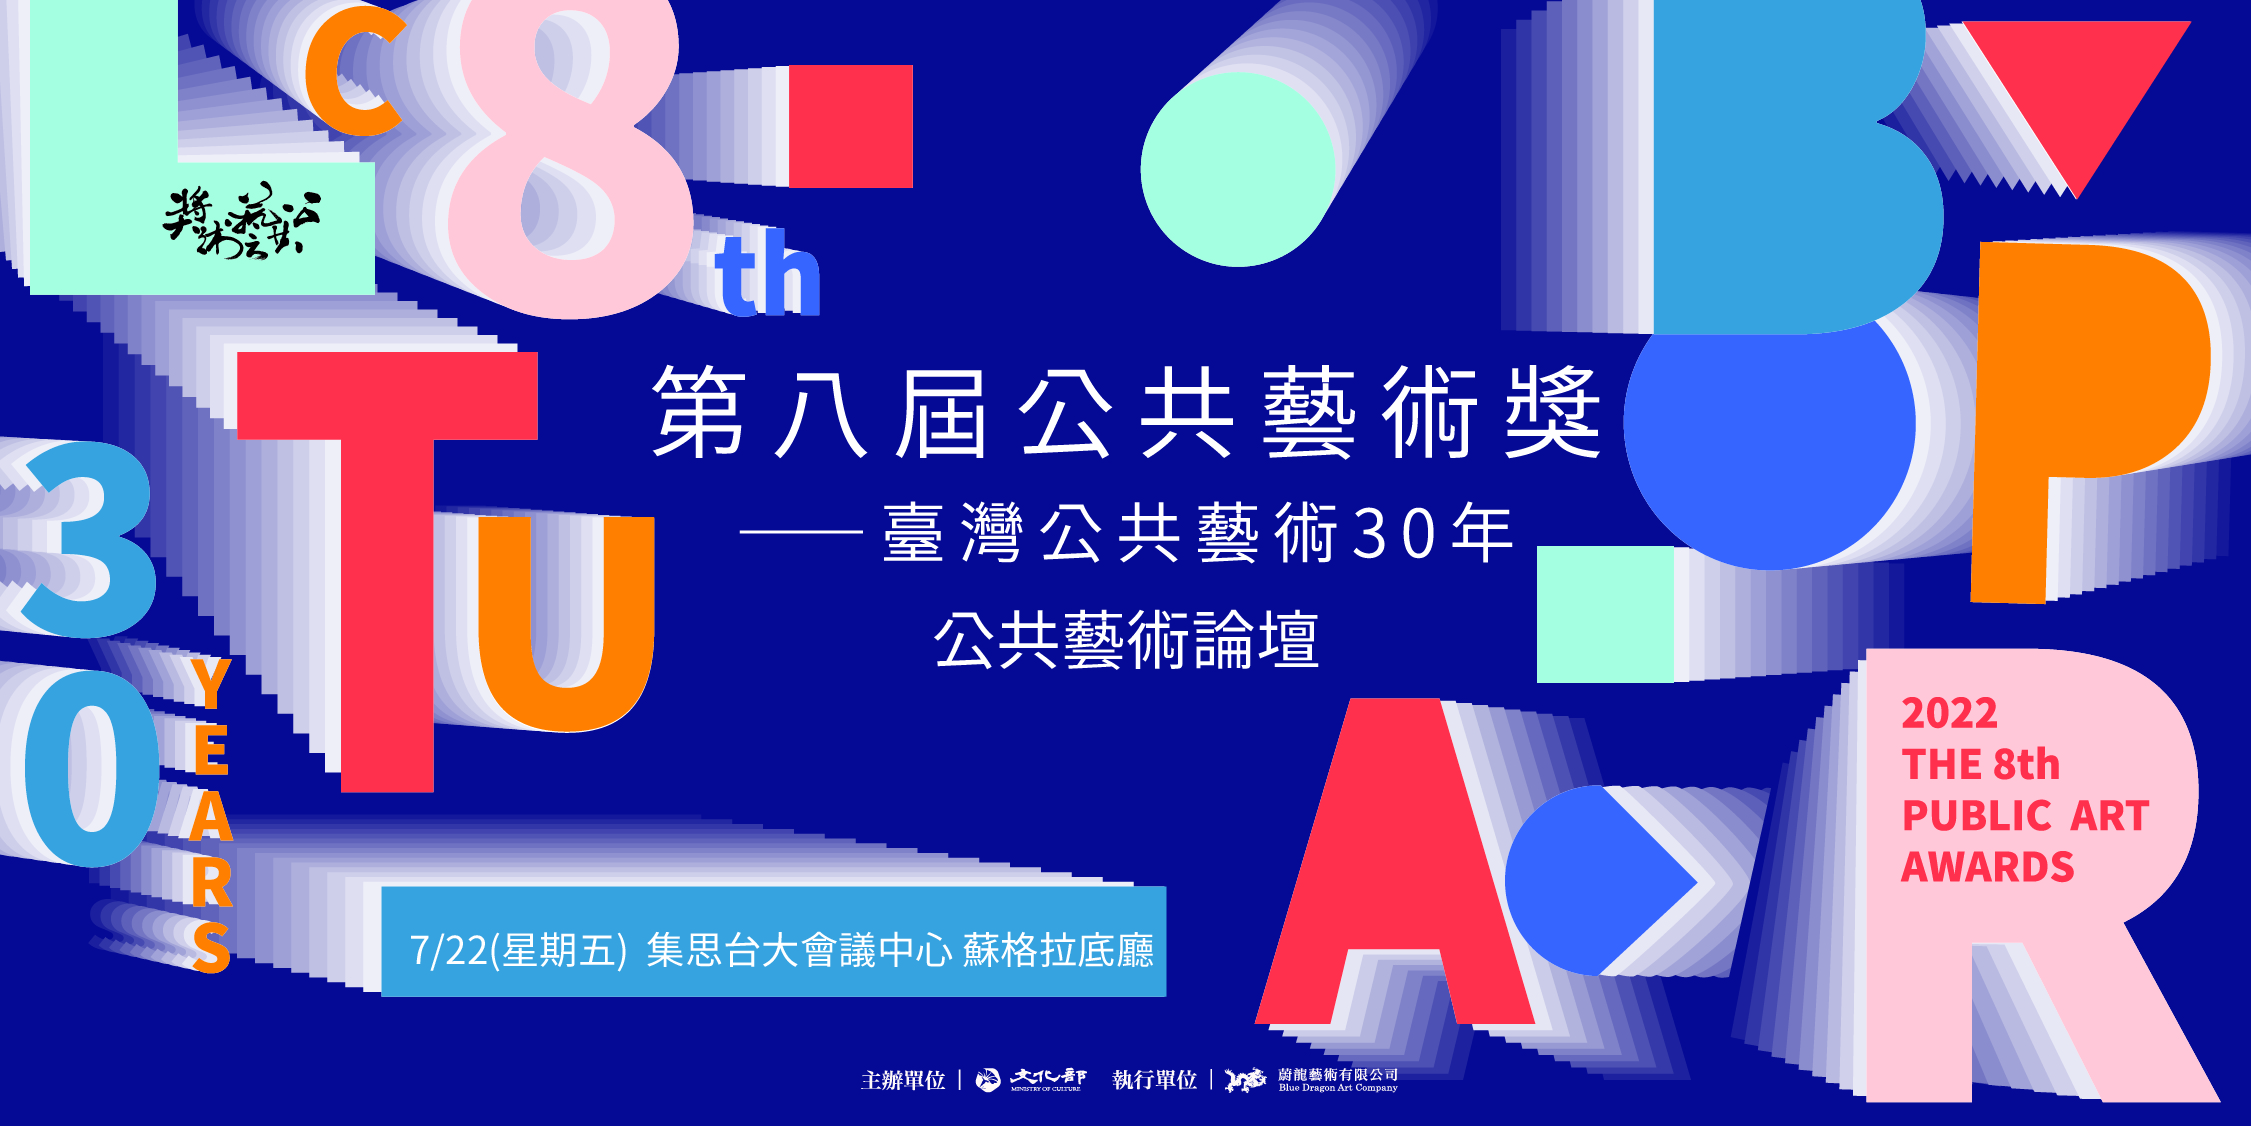 《臺灣公共藝術30年公共藝術論壇》開放報名中，歡迎公共藝術業務相關人員踴躍報名參加。